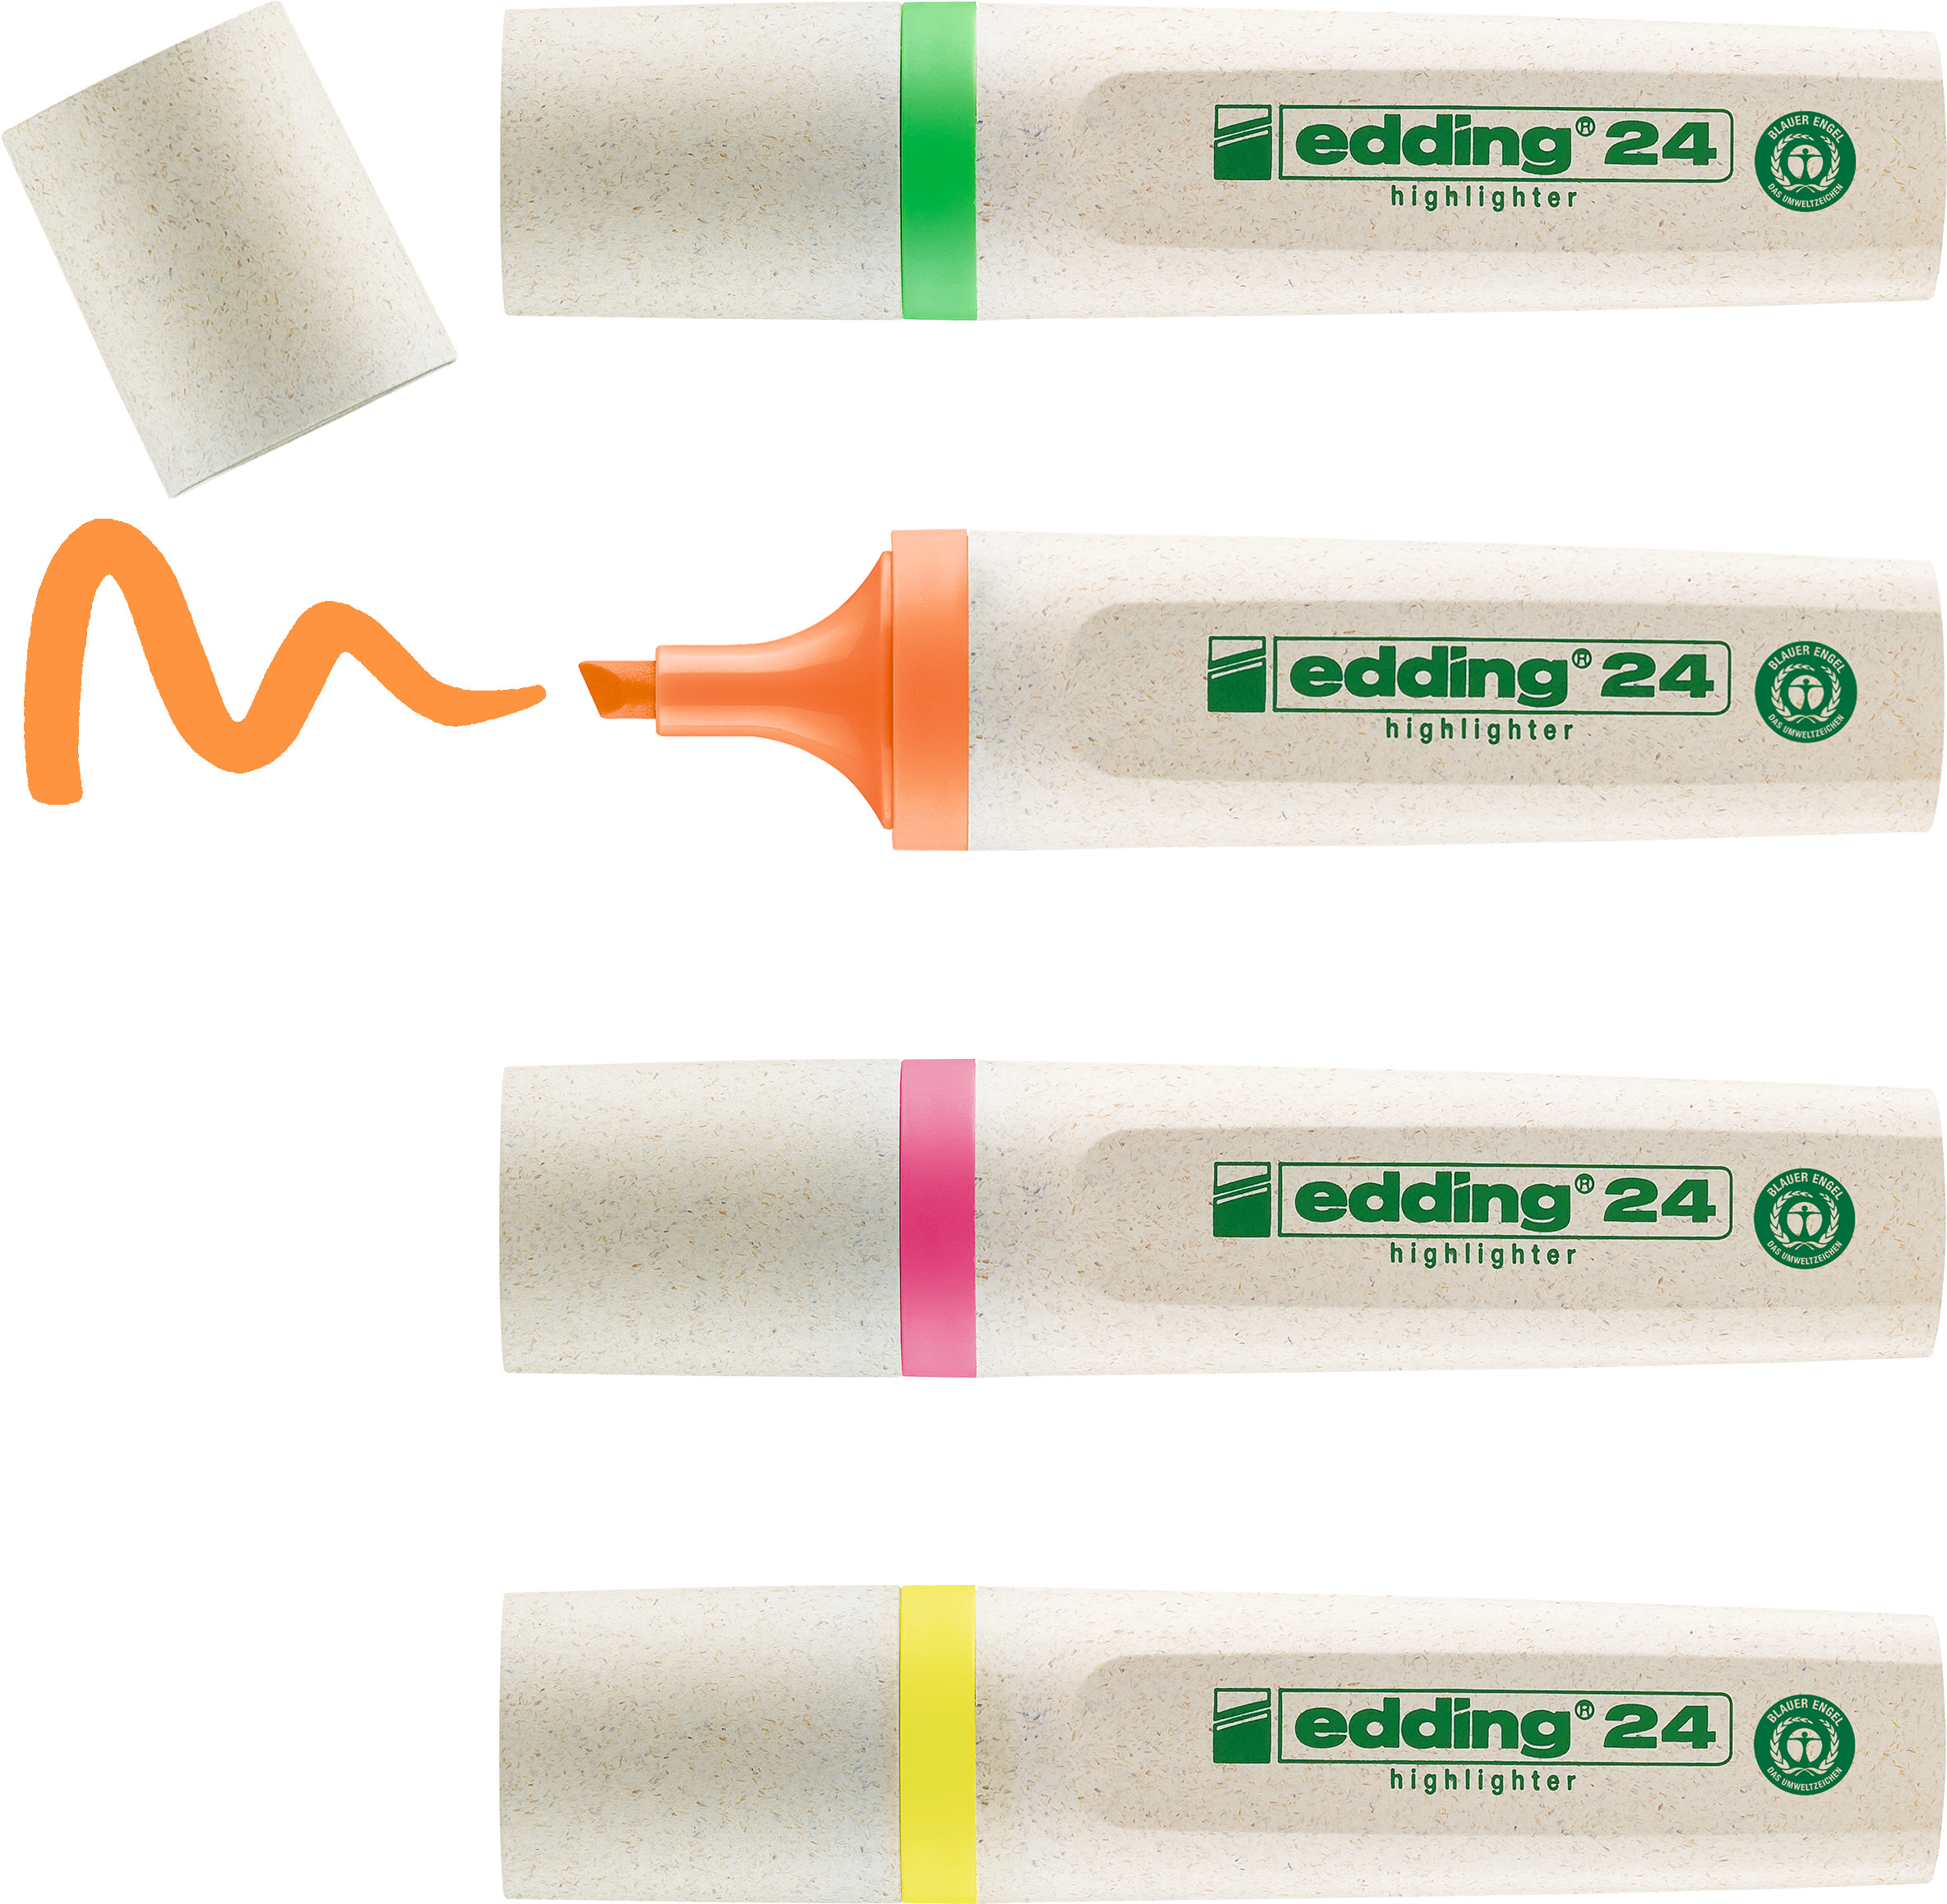 EDDING EcoLine Surligneur 24 2-5mm 24-E4 4-couleurs